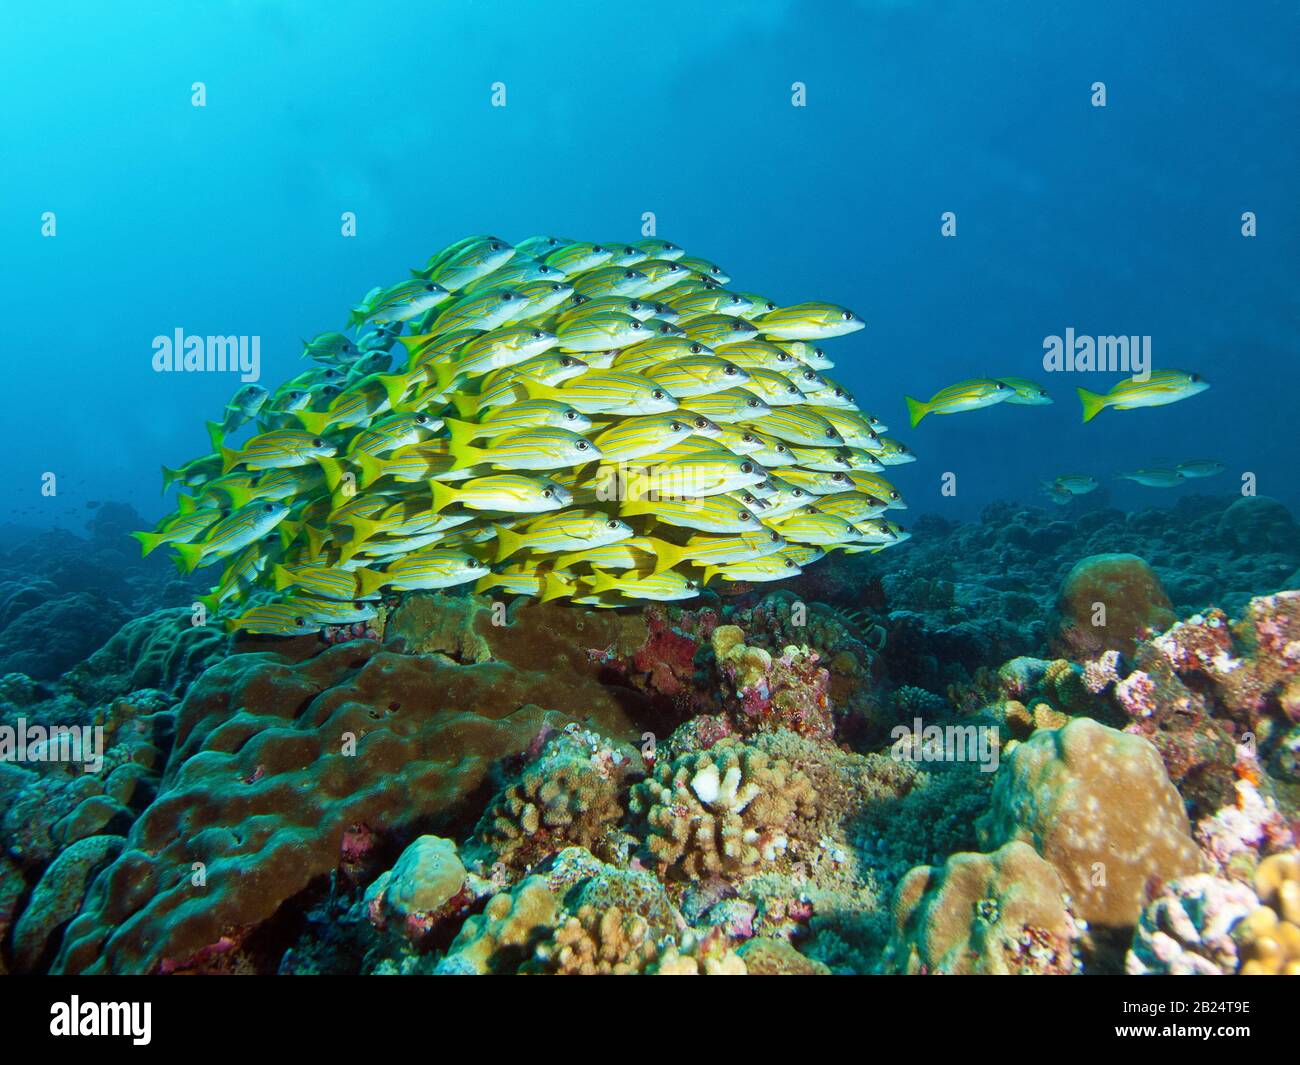 École de poissons, Bluesmûr Snapper dans un récif de corail à Palau, Micronésie. Photographie sous-marine dans un beau récif de corail. Banque D'Images